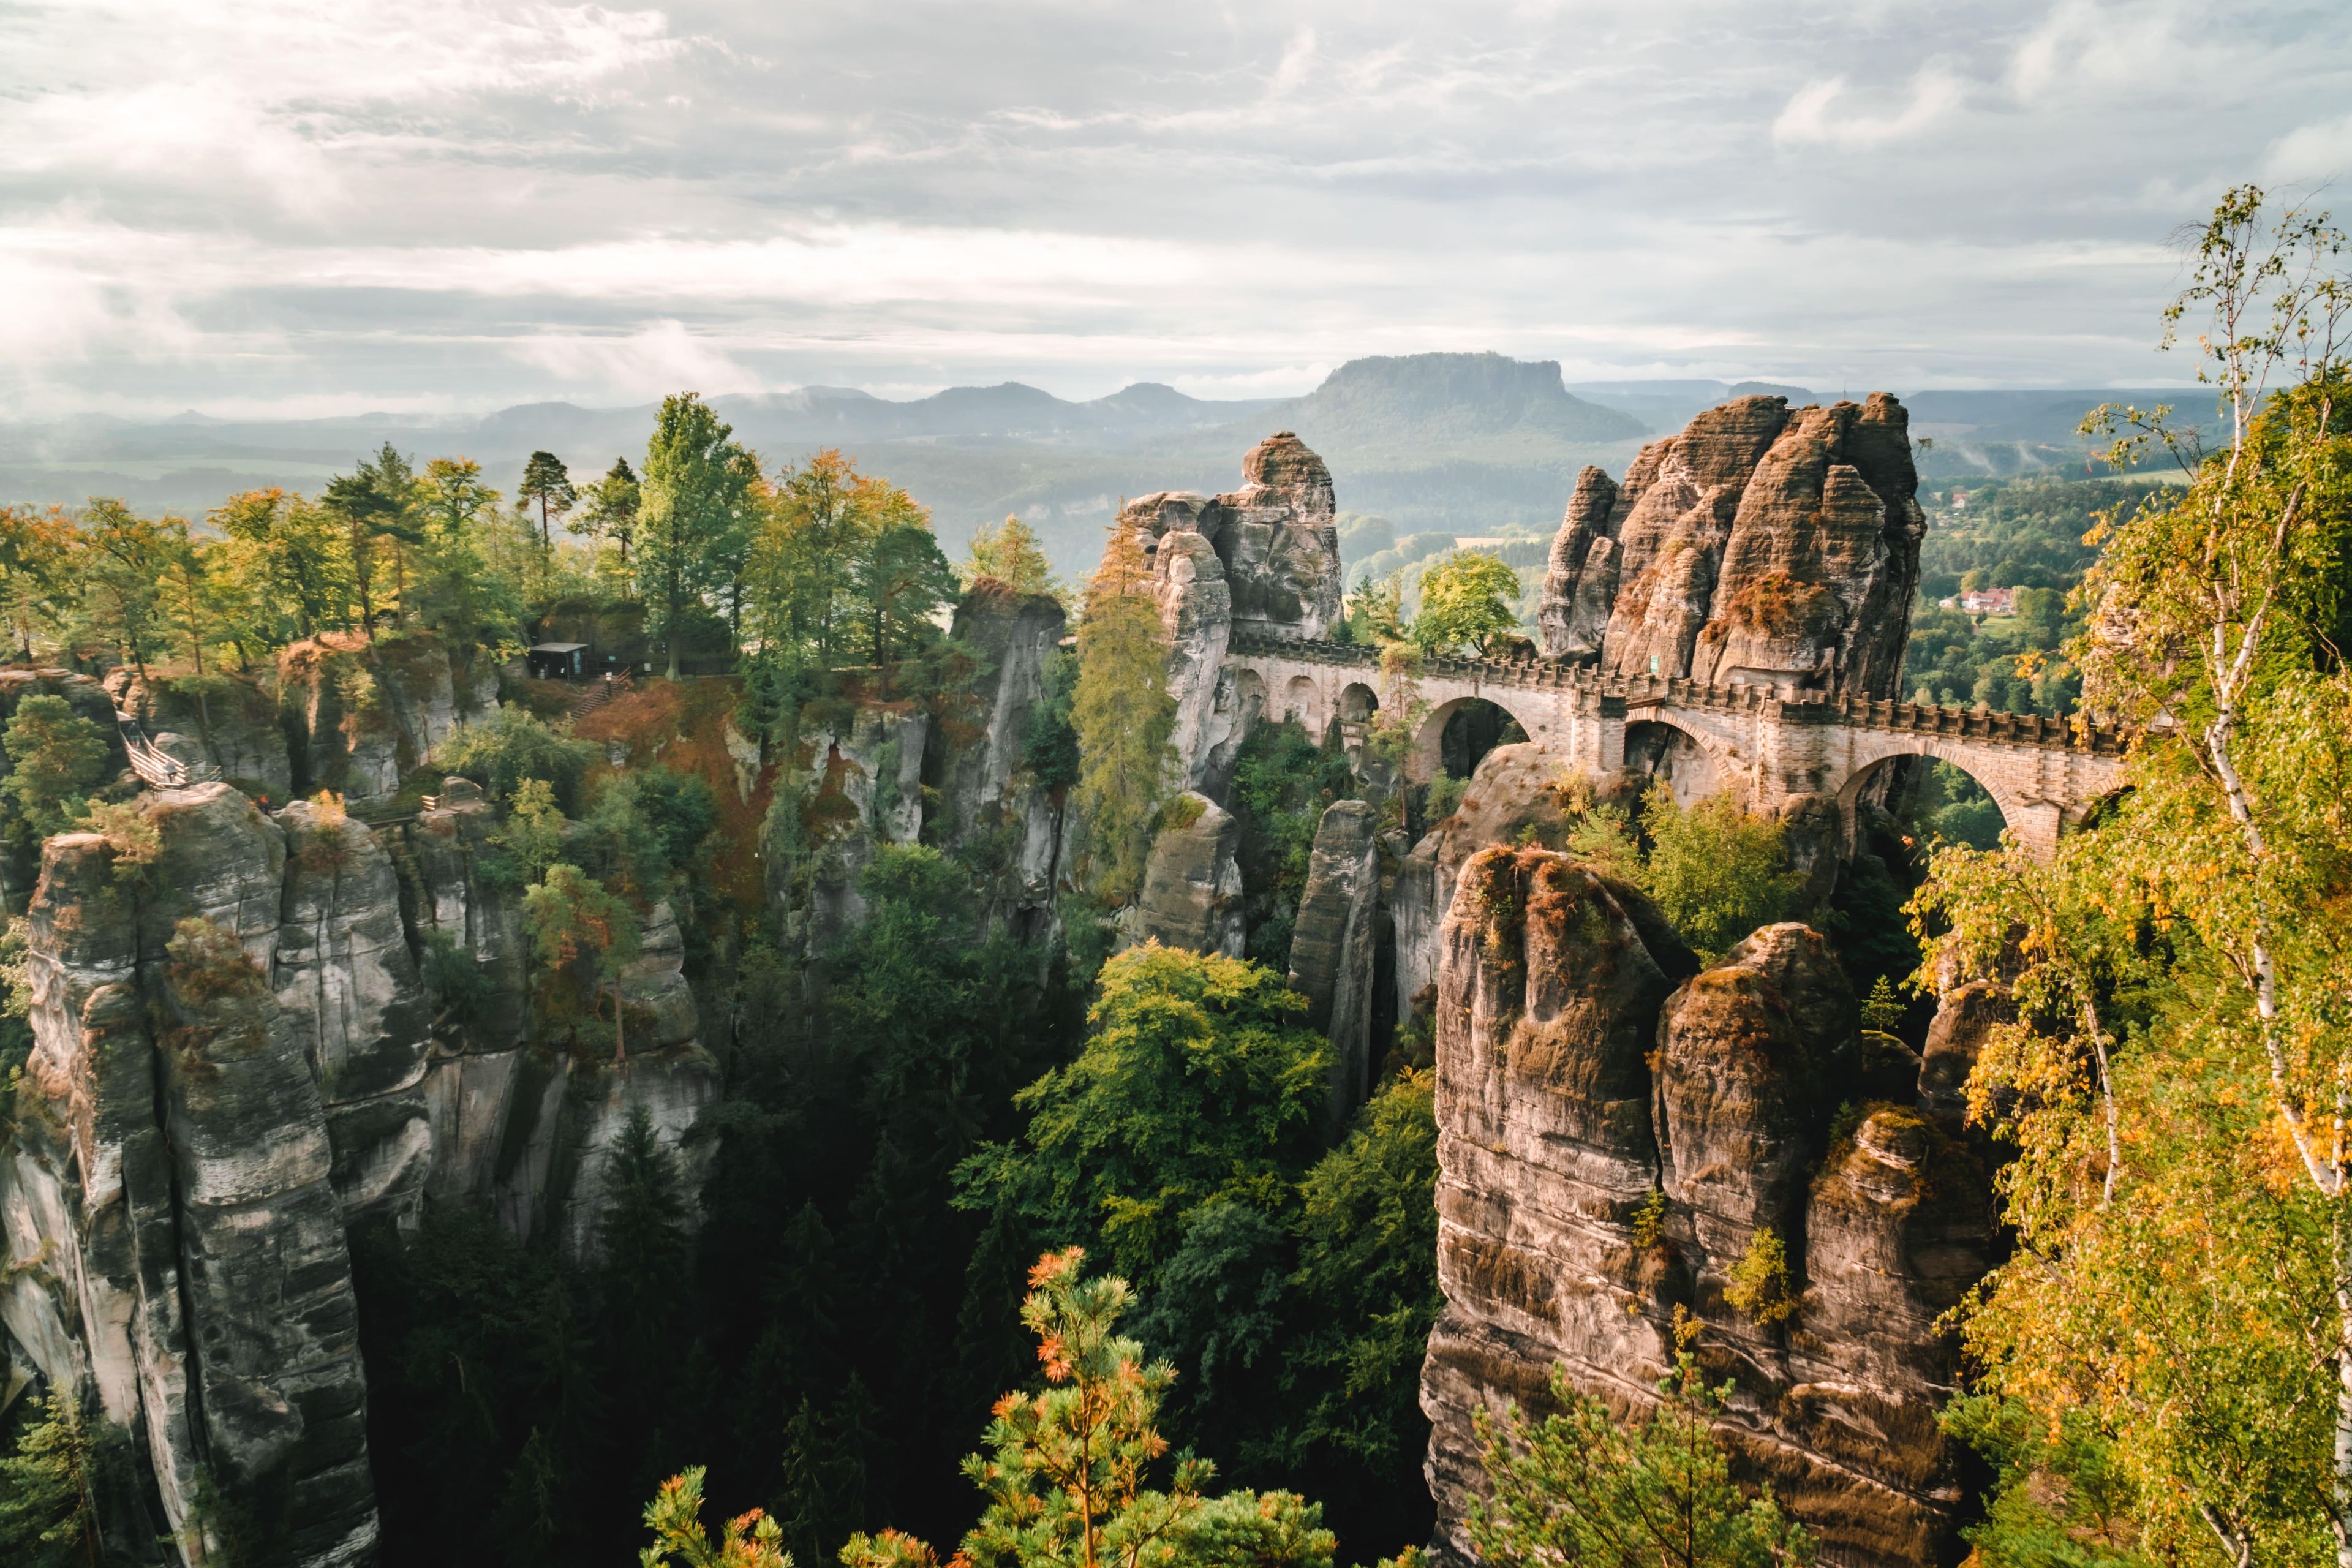 gli Elbsandsteingebirge, dal tedesco Monti di arenaria dell’Elba, in Germania al confine con la Repubblica Ceca: natura selvaggia con gole profonde e fitte foreste